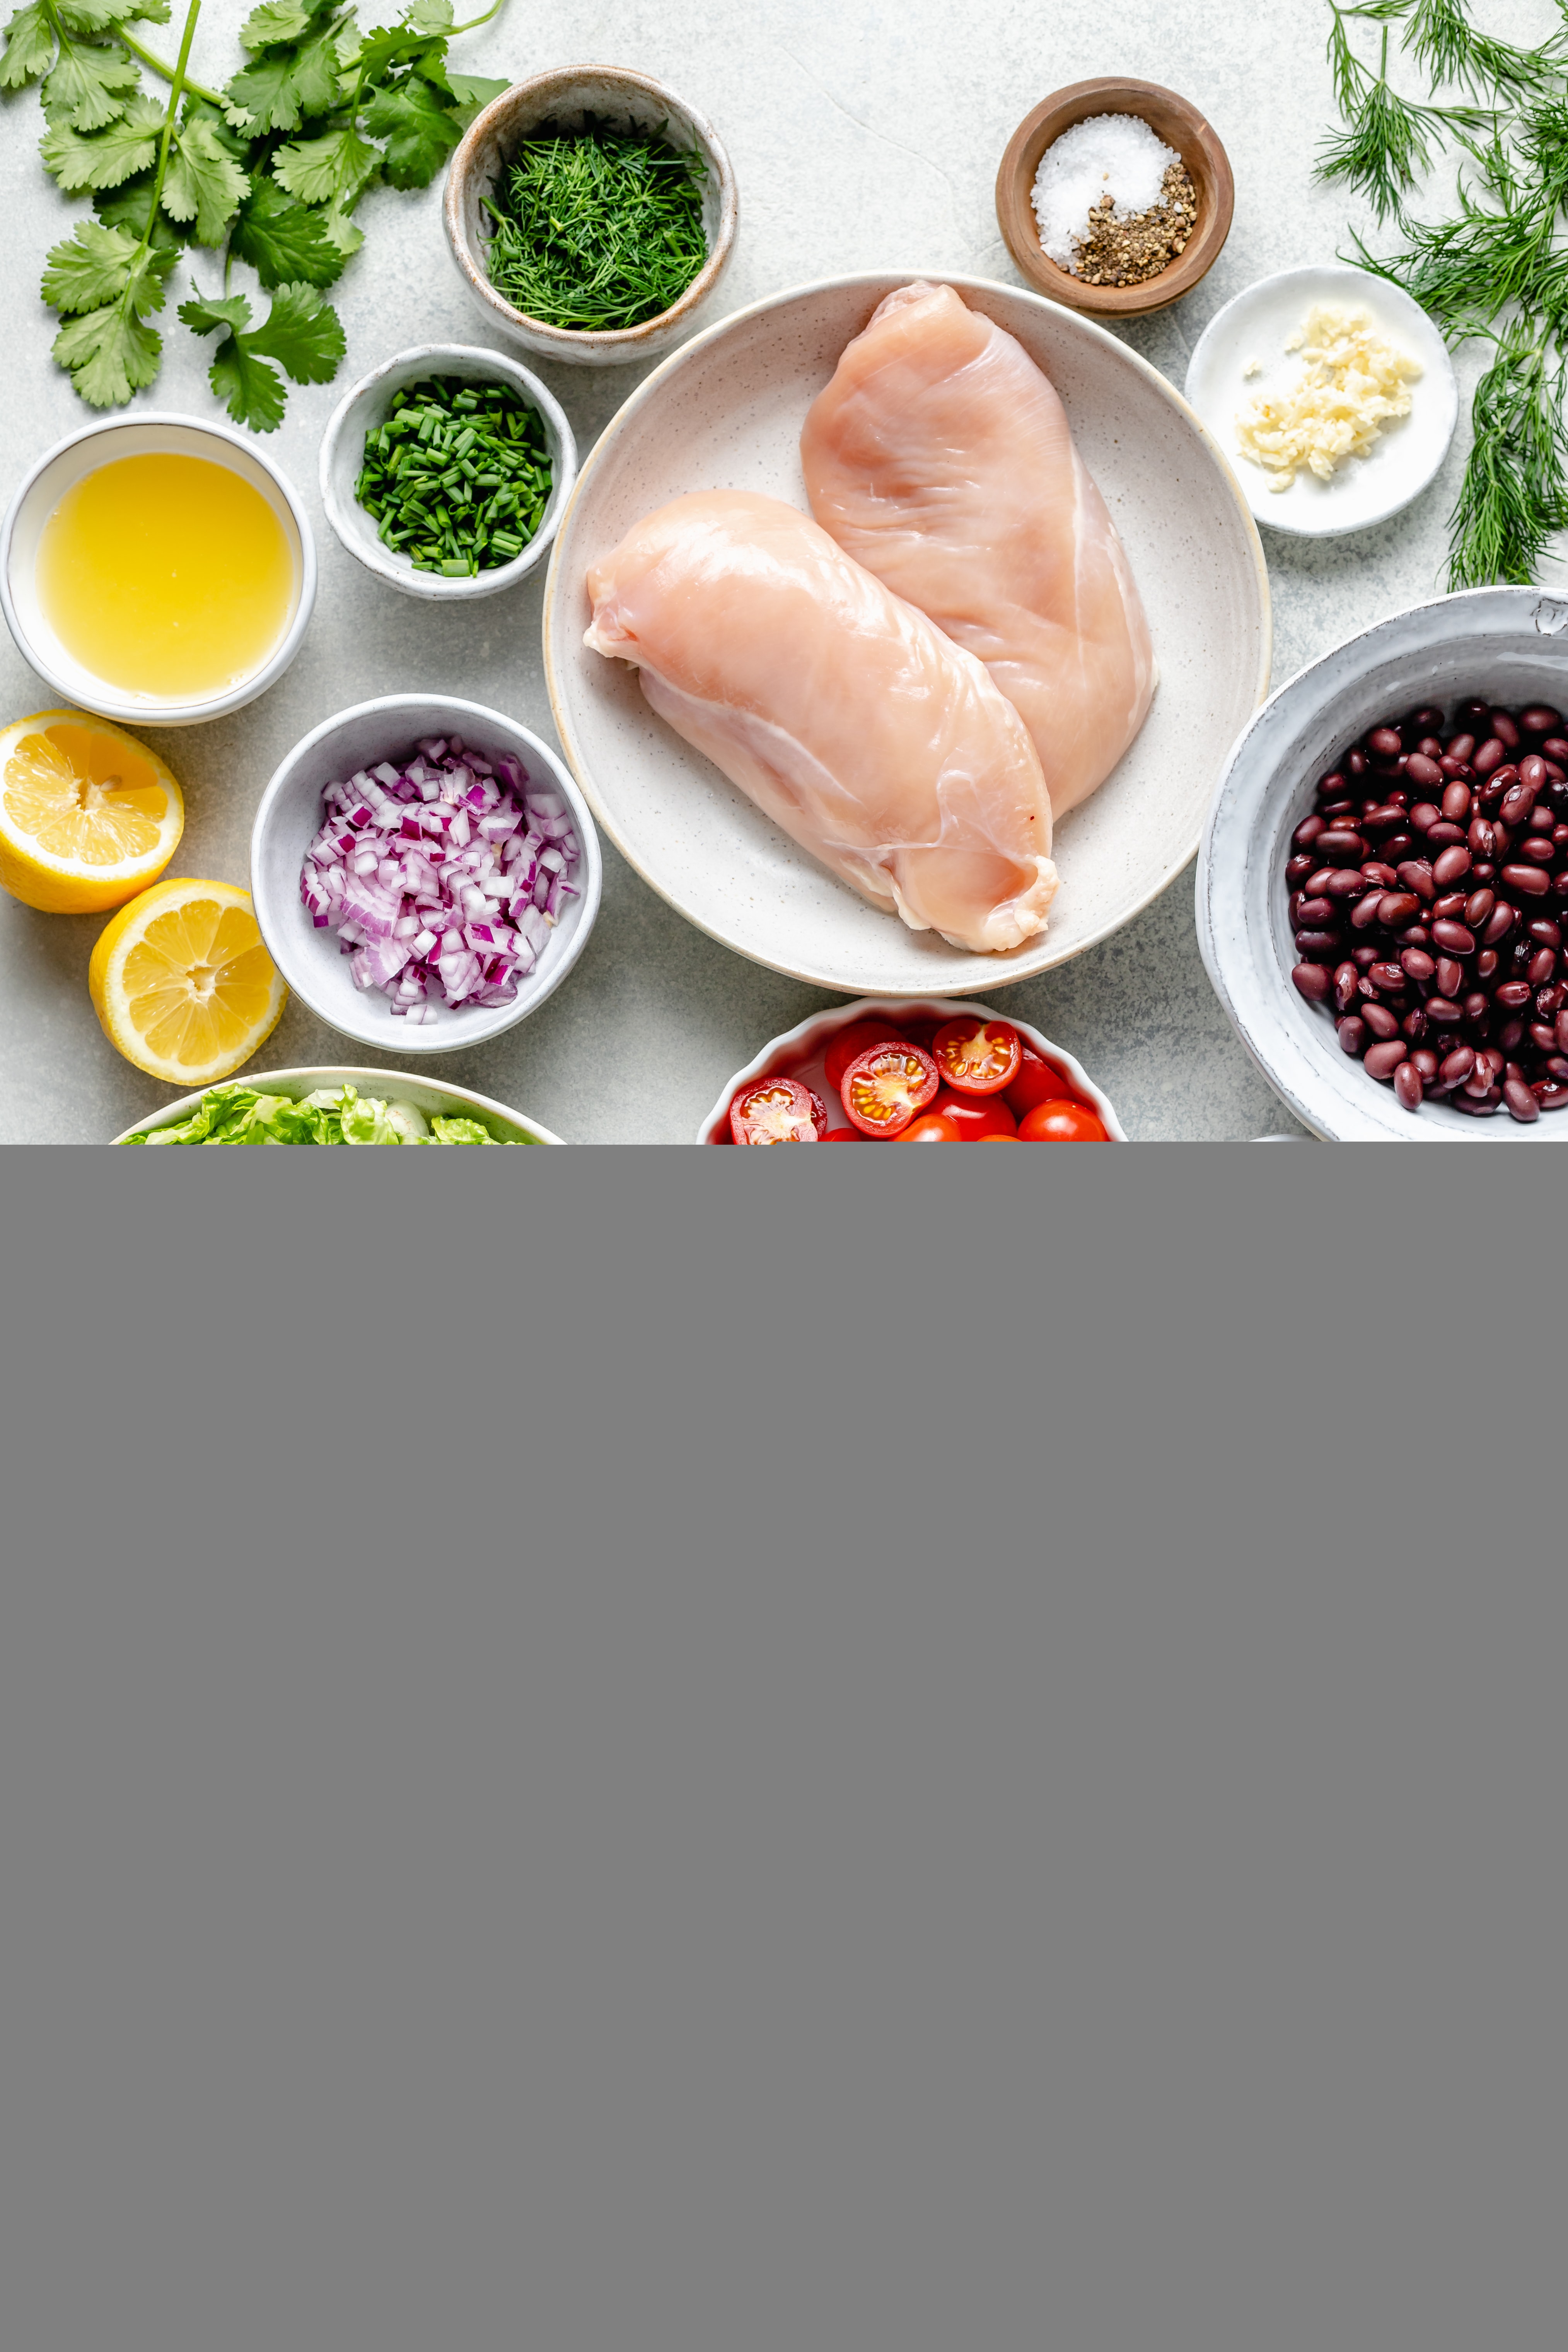 bbq chicken salad ingredients